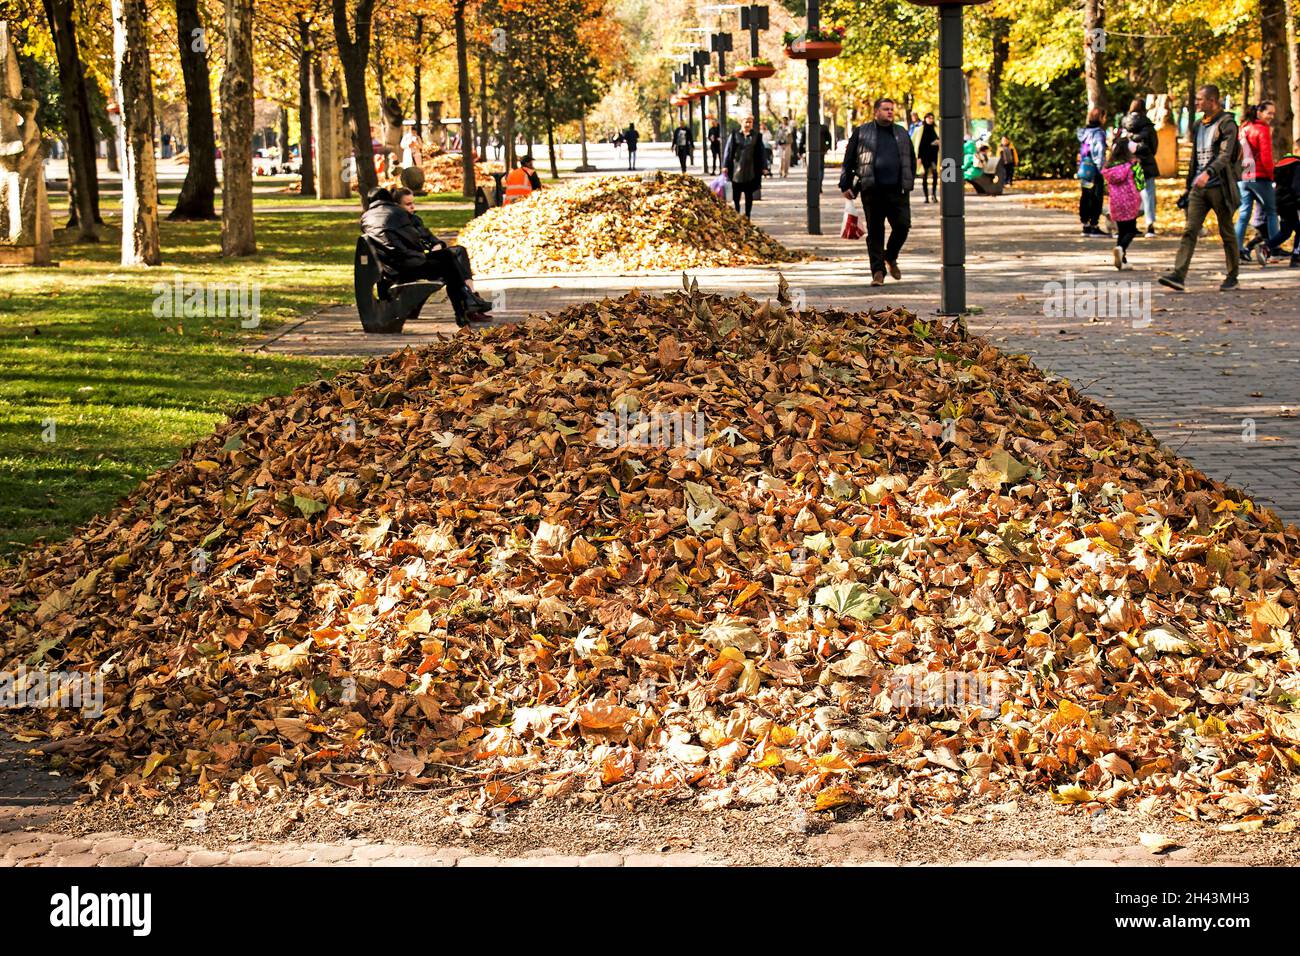 Dnepropetrovsk, Ucraina - 10.22.2021: Autunno caduto foglie secche raccolte in cumuli. Pomeriggio di sole nel parco. Foto Stock